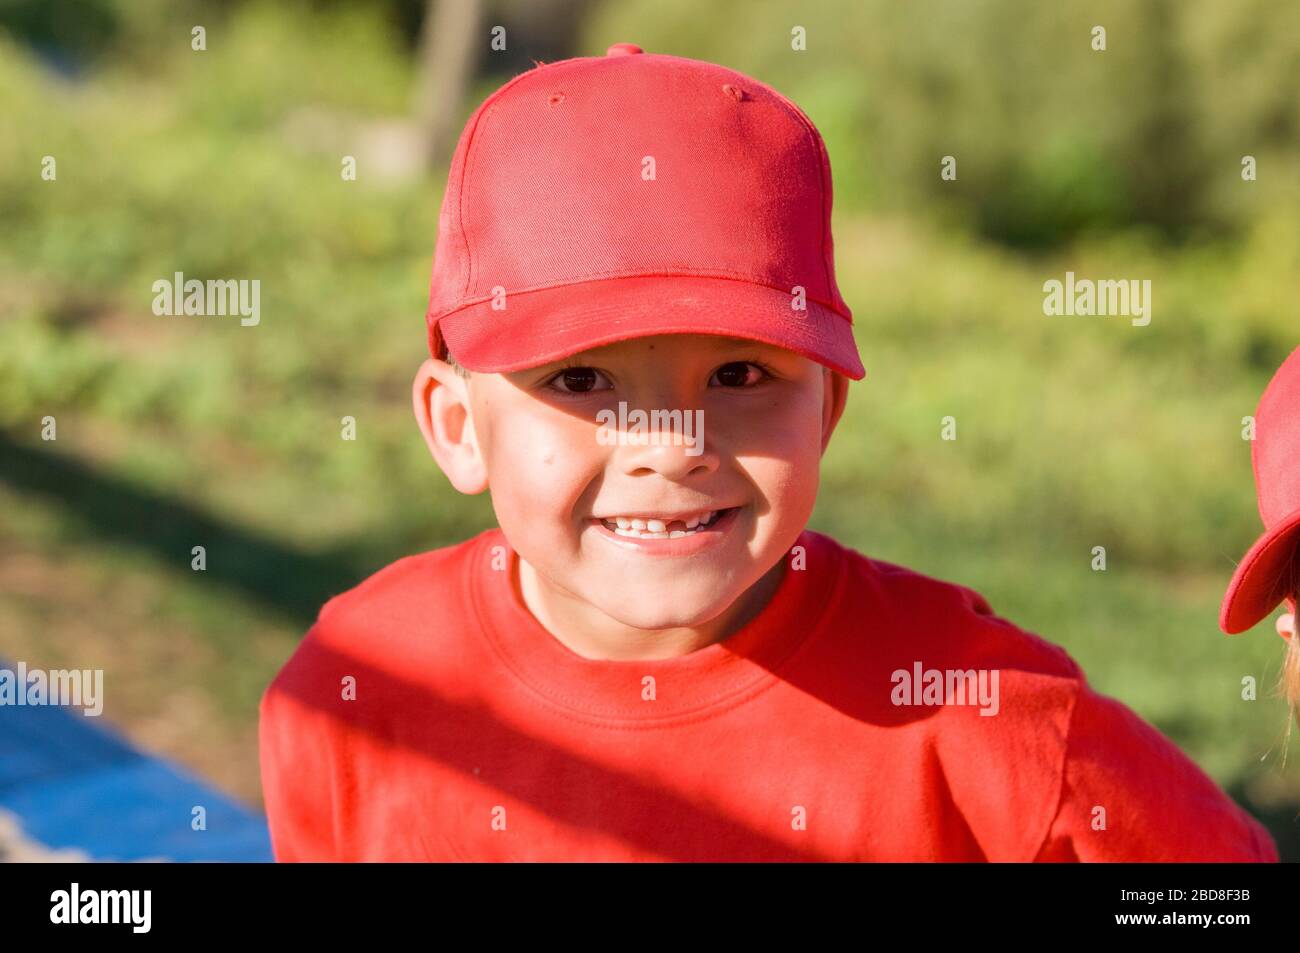 Un niño pequeño que falta un diente en la gorra roja de béisbol sonriendo a la cámara Foto de stock